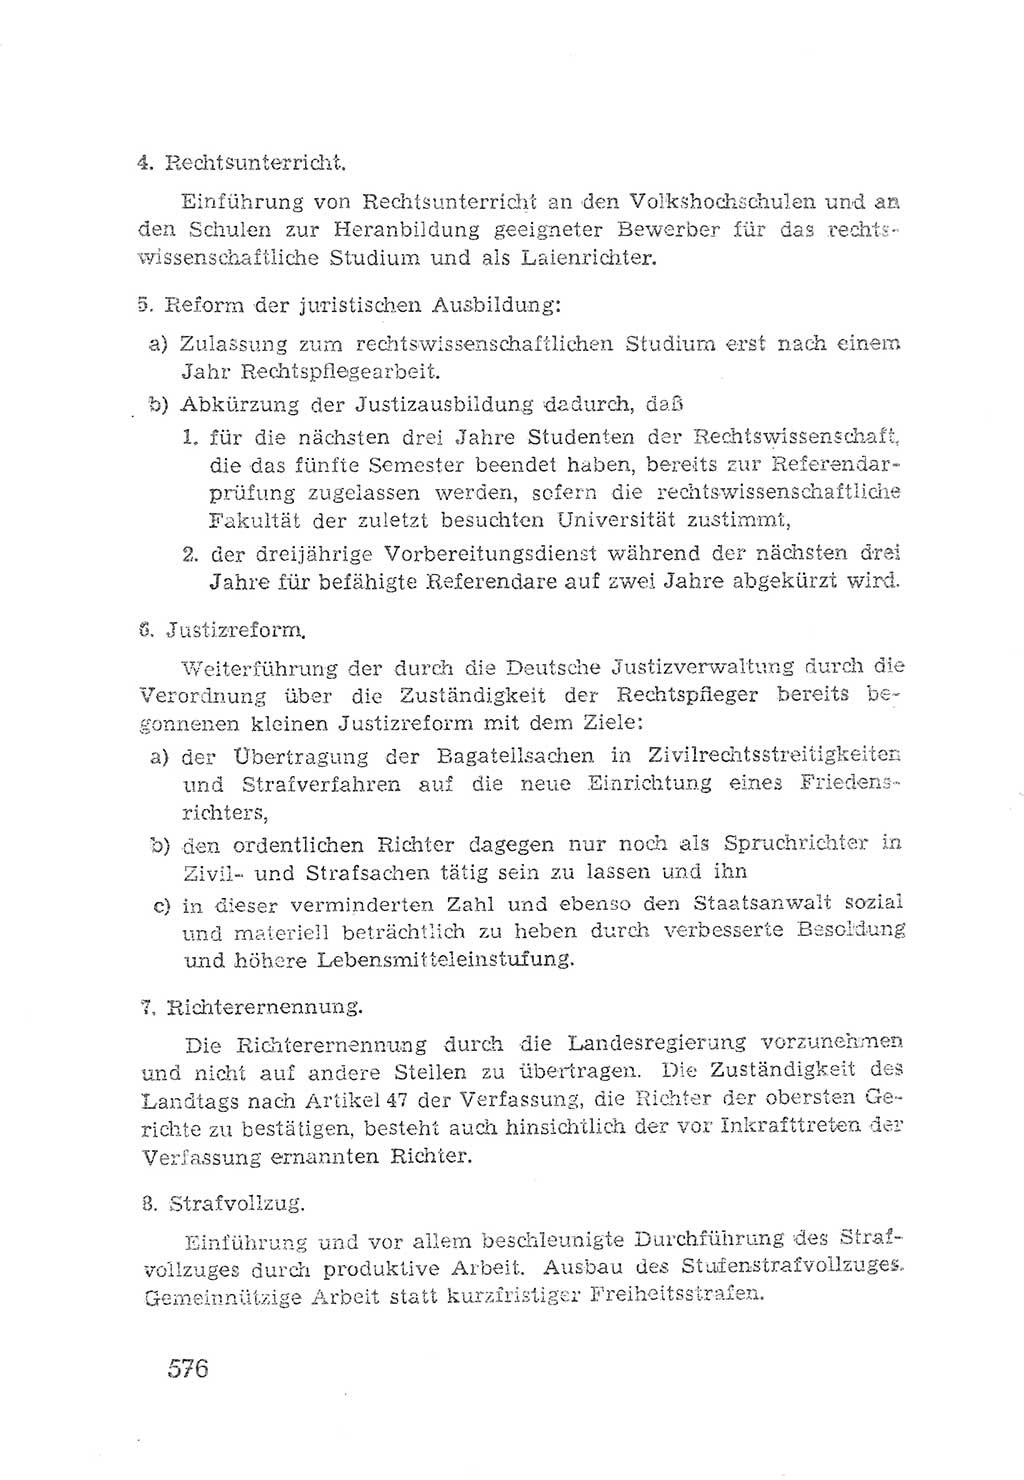 Protokoll der Verhandlungen des 2. Parteitages der Sozialistischen Einheitspartei Deutschlands (SED) [Sowjetische Besatzungszone (SBZ) Deutschlands] 1947, Seite 576 (Prot. Verh. 2. PT SED SBZ Dtl. 1947, S. 576)